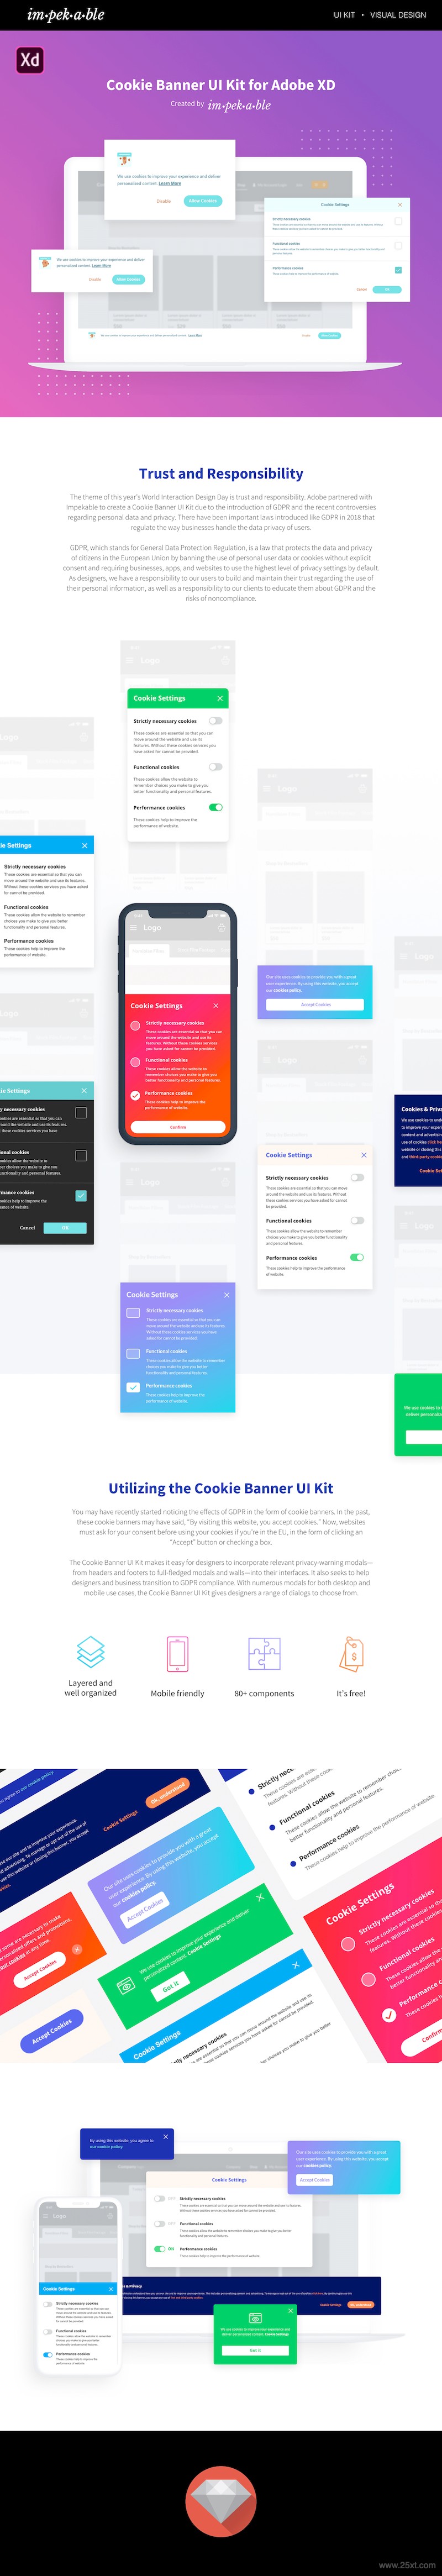 Cookie Banner UI Kit for Adobe XD-2.jpg